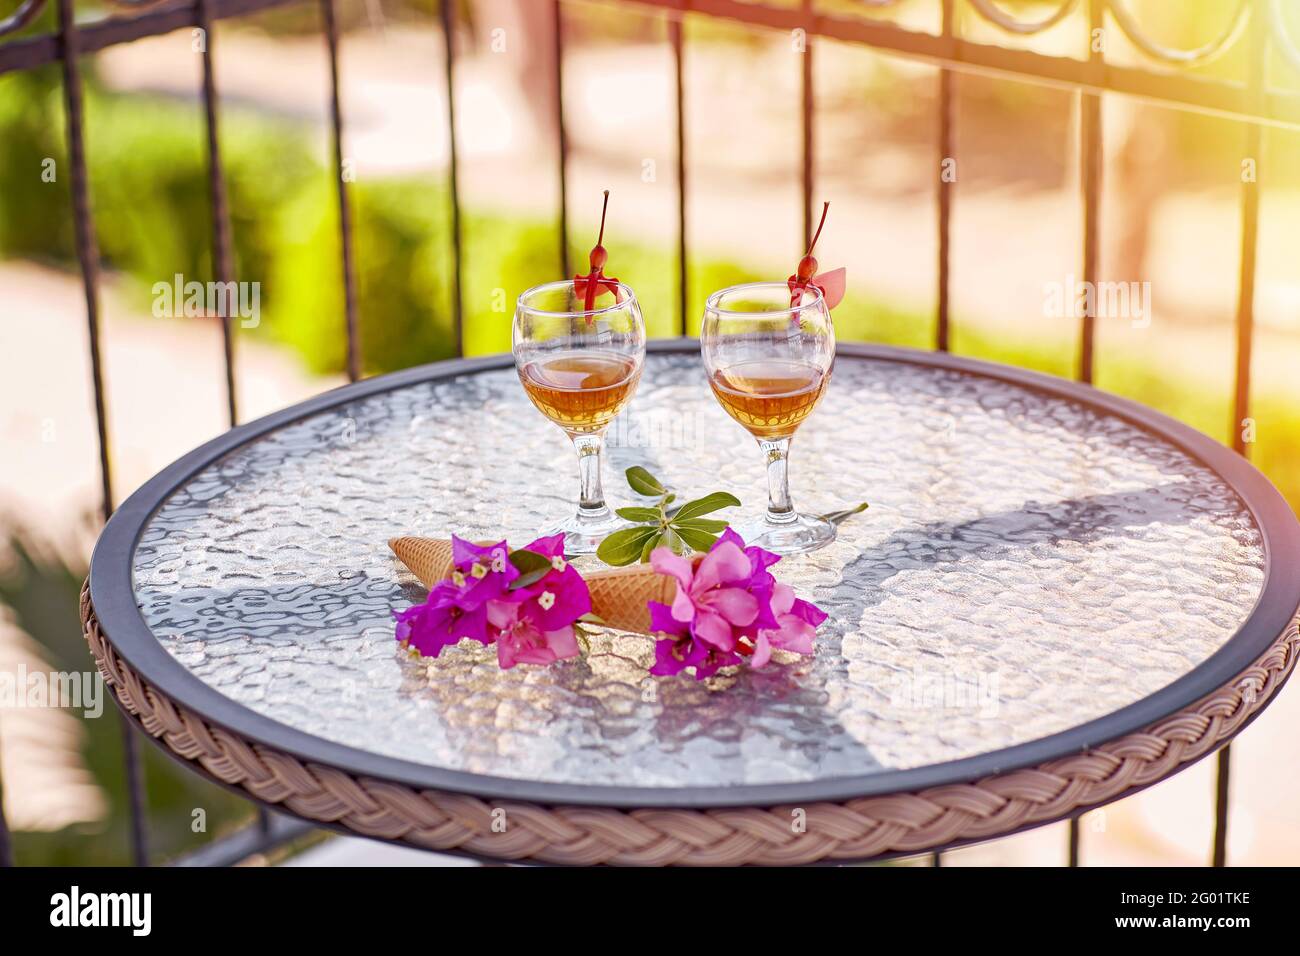 Apéritif d'été composé de cocktails maison et de fleurs roses de bougainvilliers sur une table en verre. Concept de rafraîchissement. Copier l'espace. En été, fleurs surréalistes et boissons maison. Copier l'espace. Haute qualité Banque D'Images